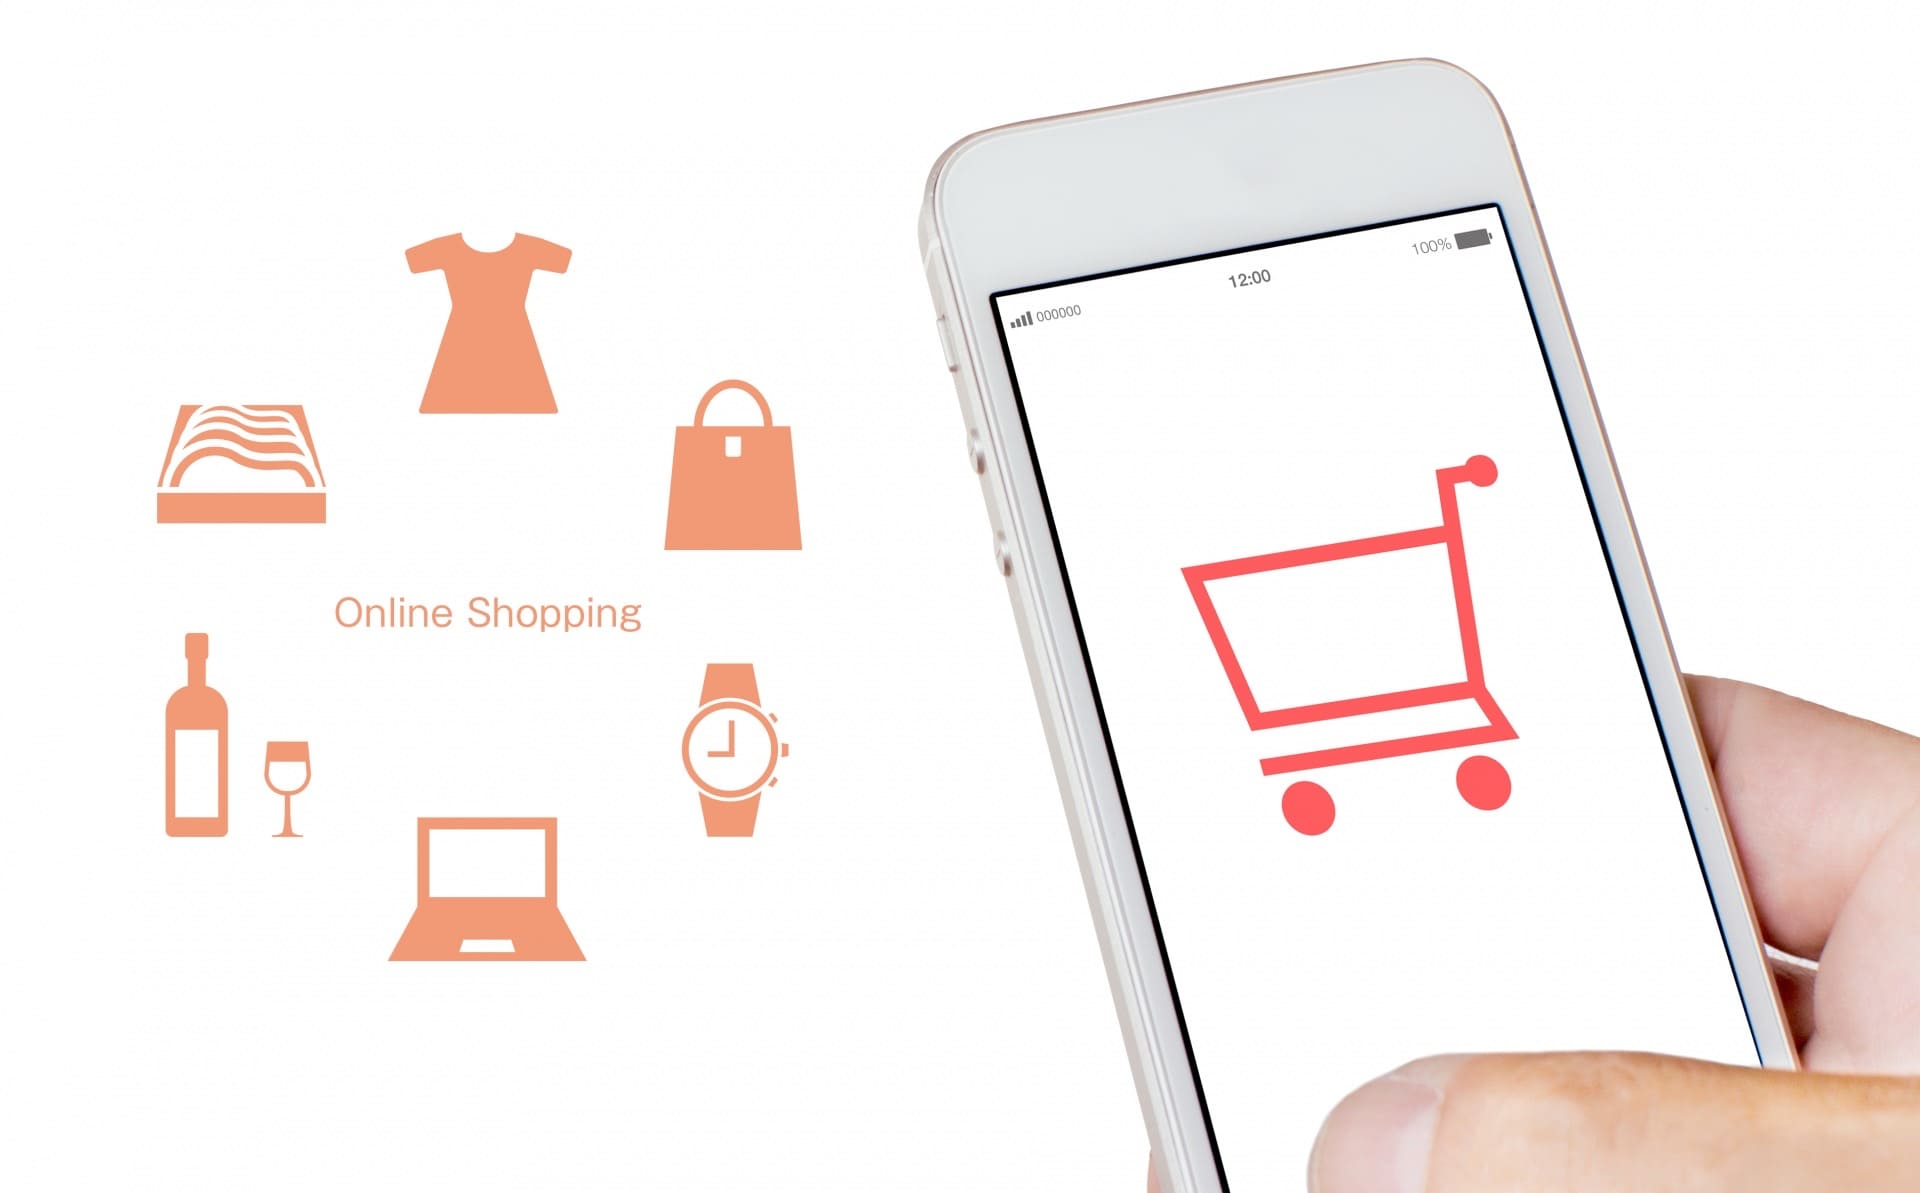 スマートフォンの画面に映るショッピングカートとオンラインショッピングのイラスト
